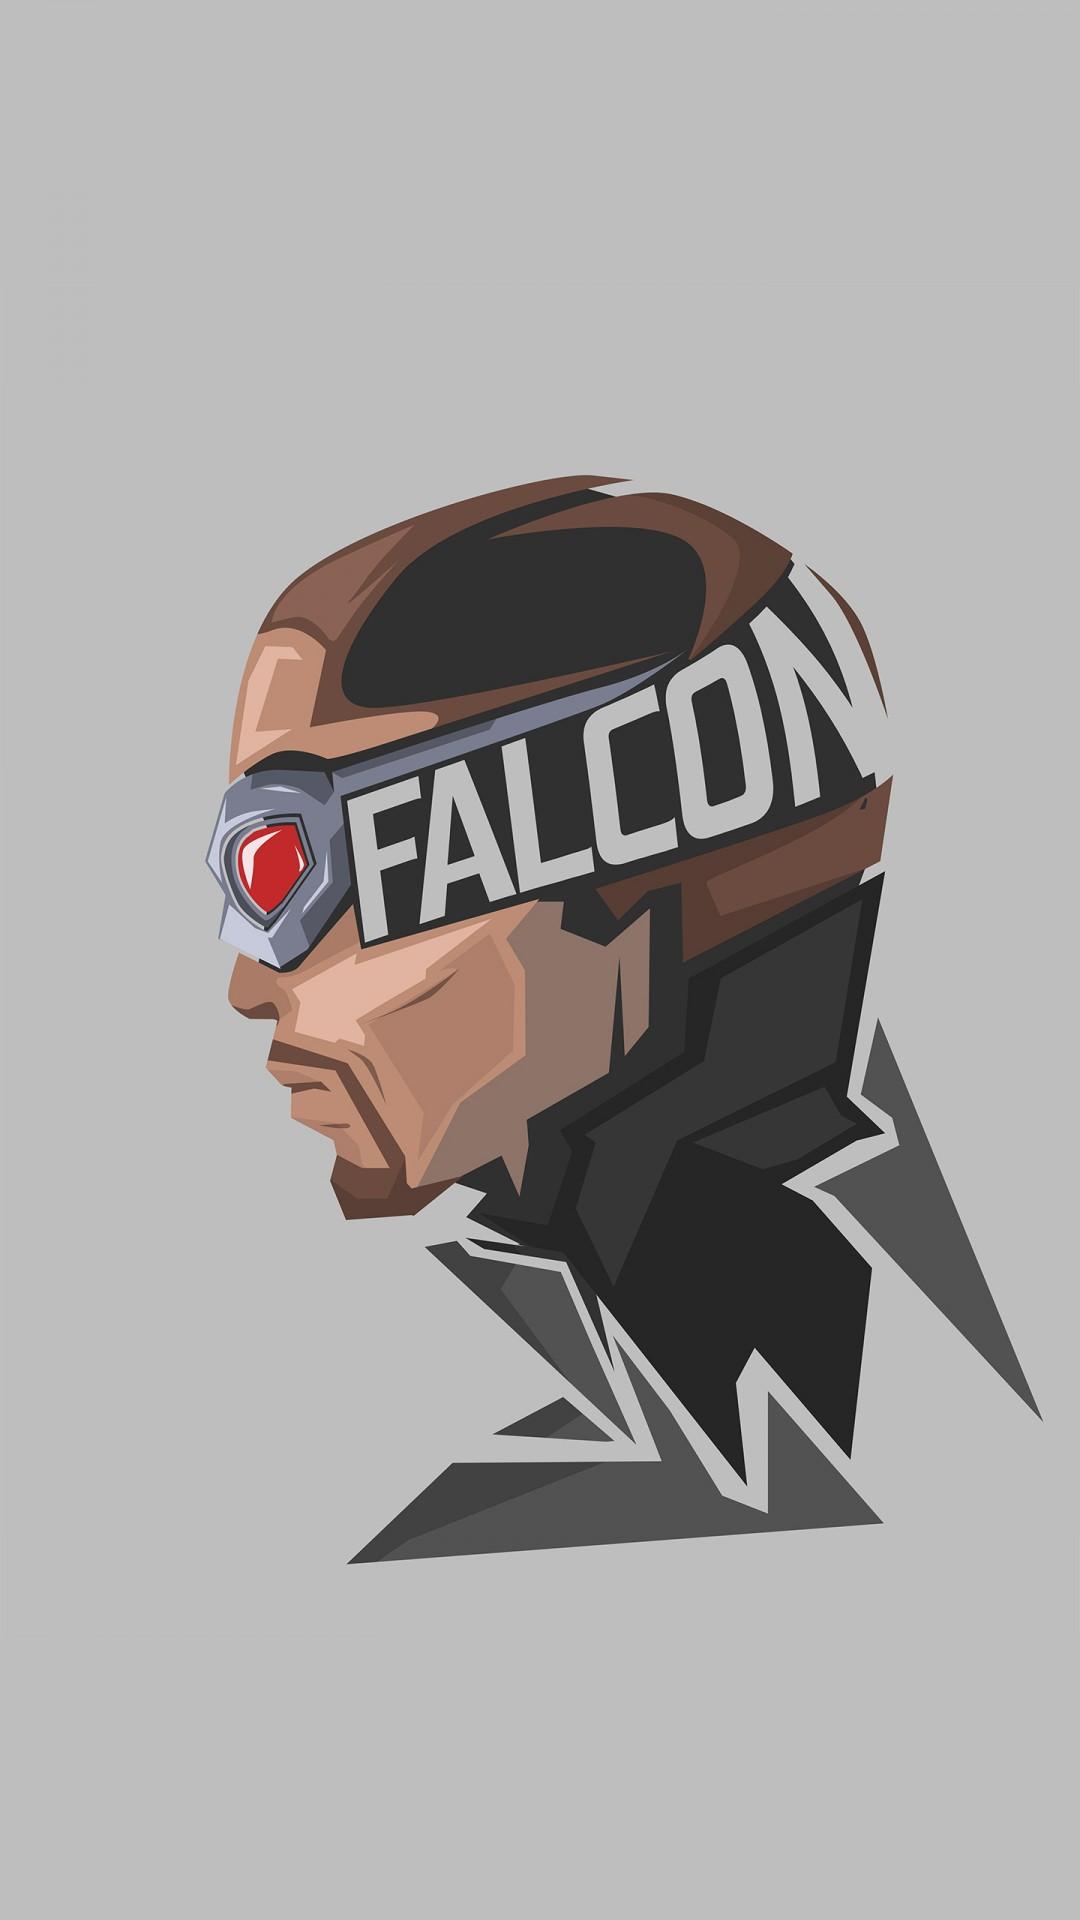 Falcon Marvel Superhero Minimal 4K 8K Wallpaper. HD Wallpaper